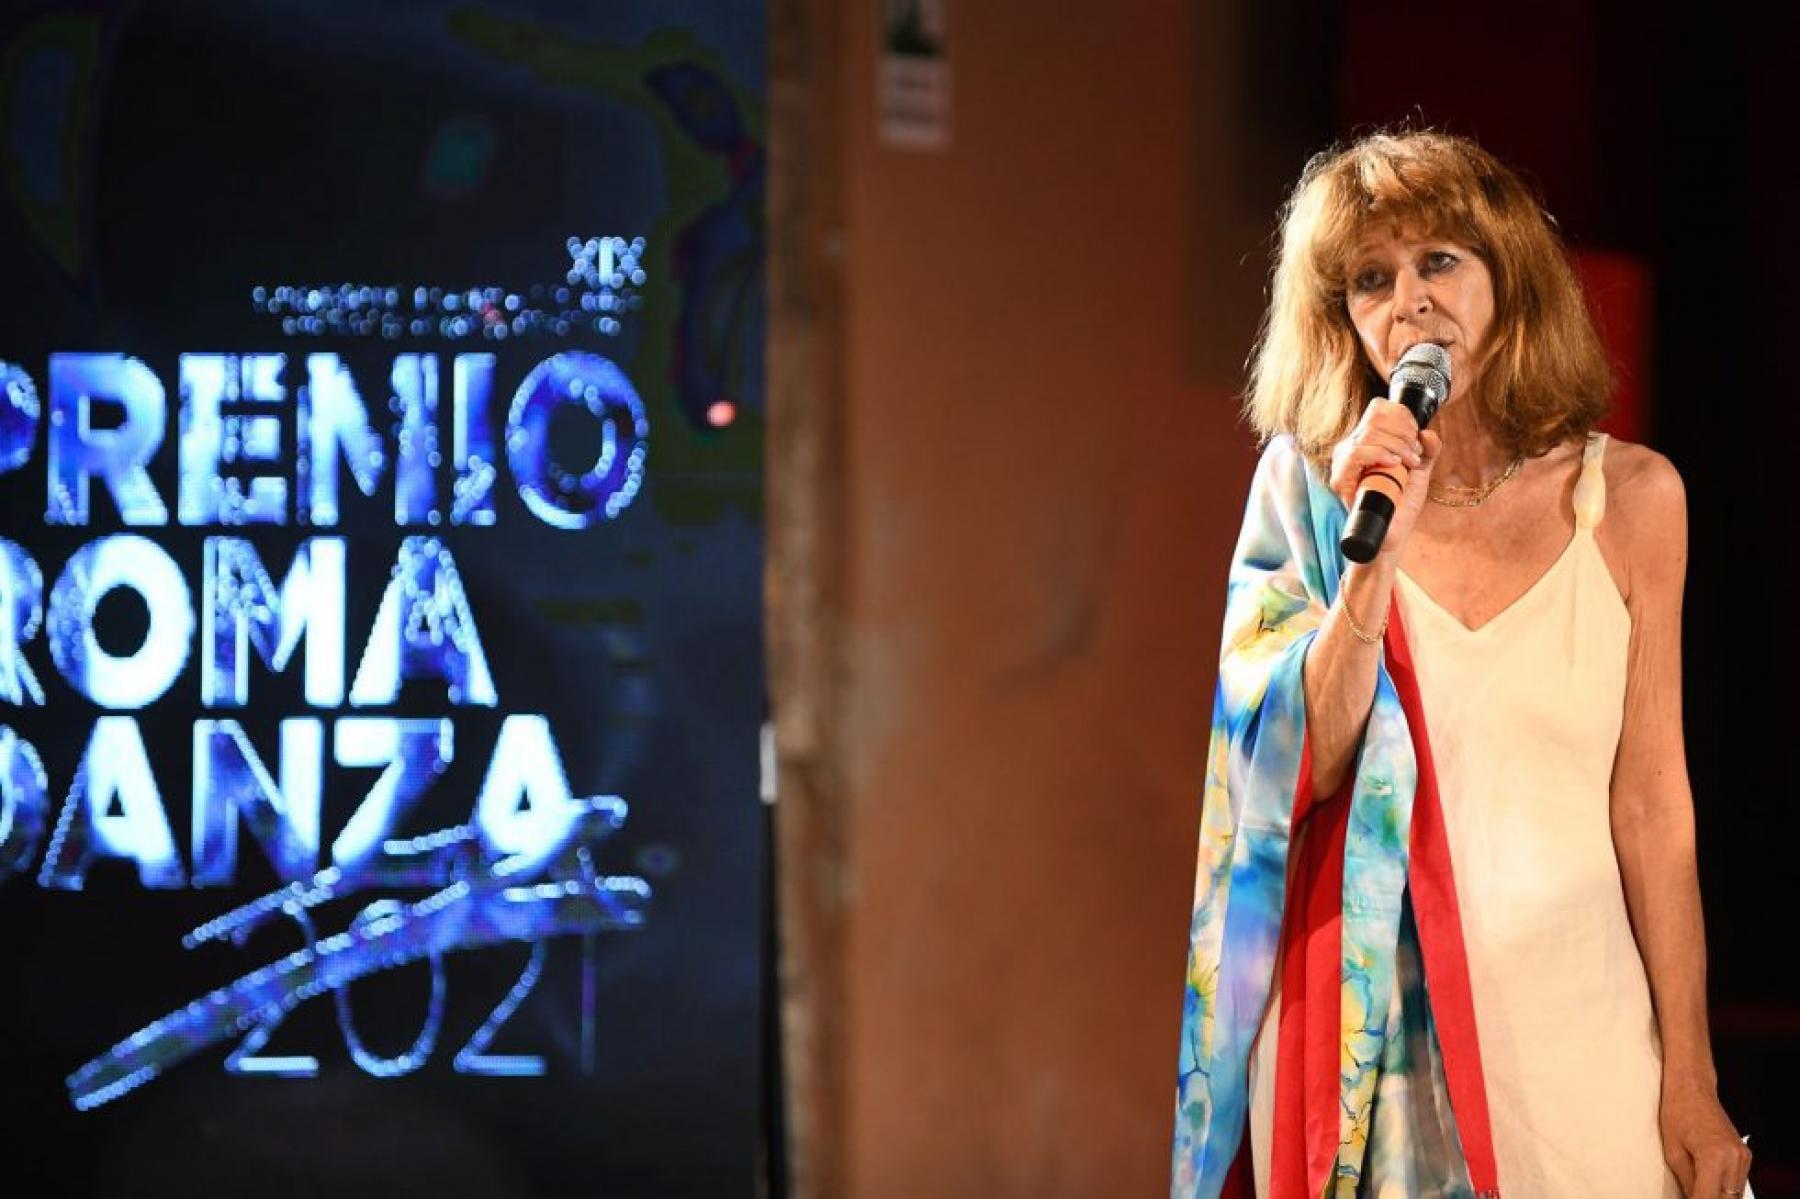 19th edition of the “Premio Roma Danza” focusses again on Video -Dance